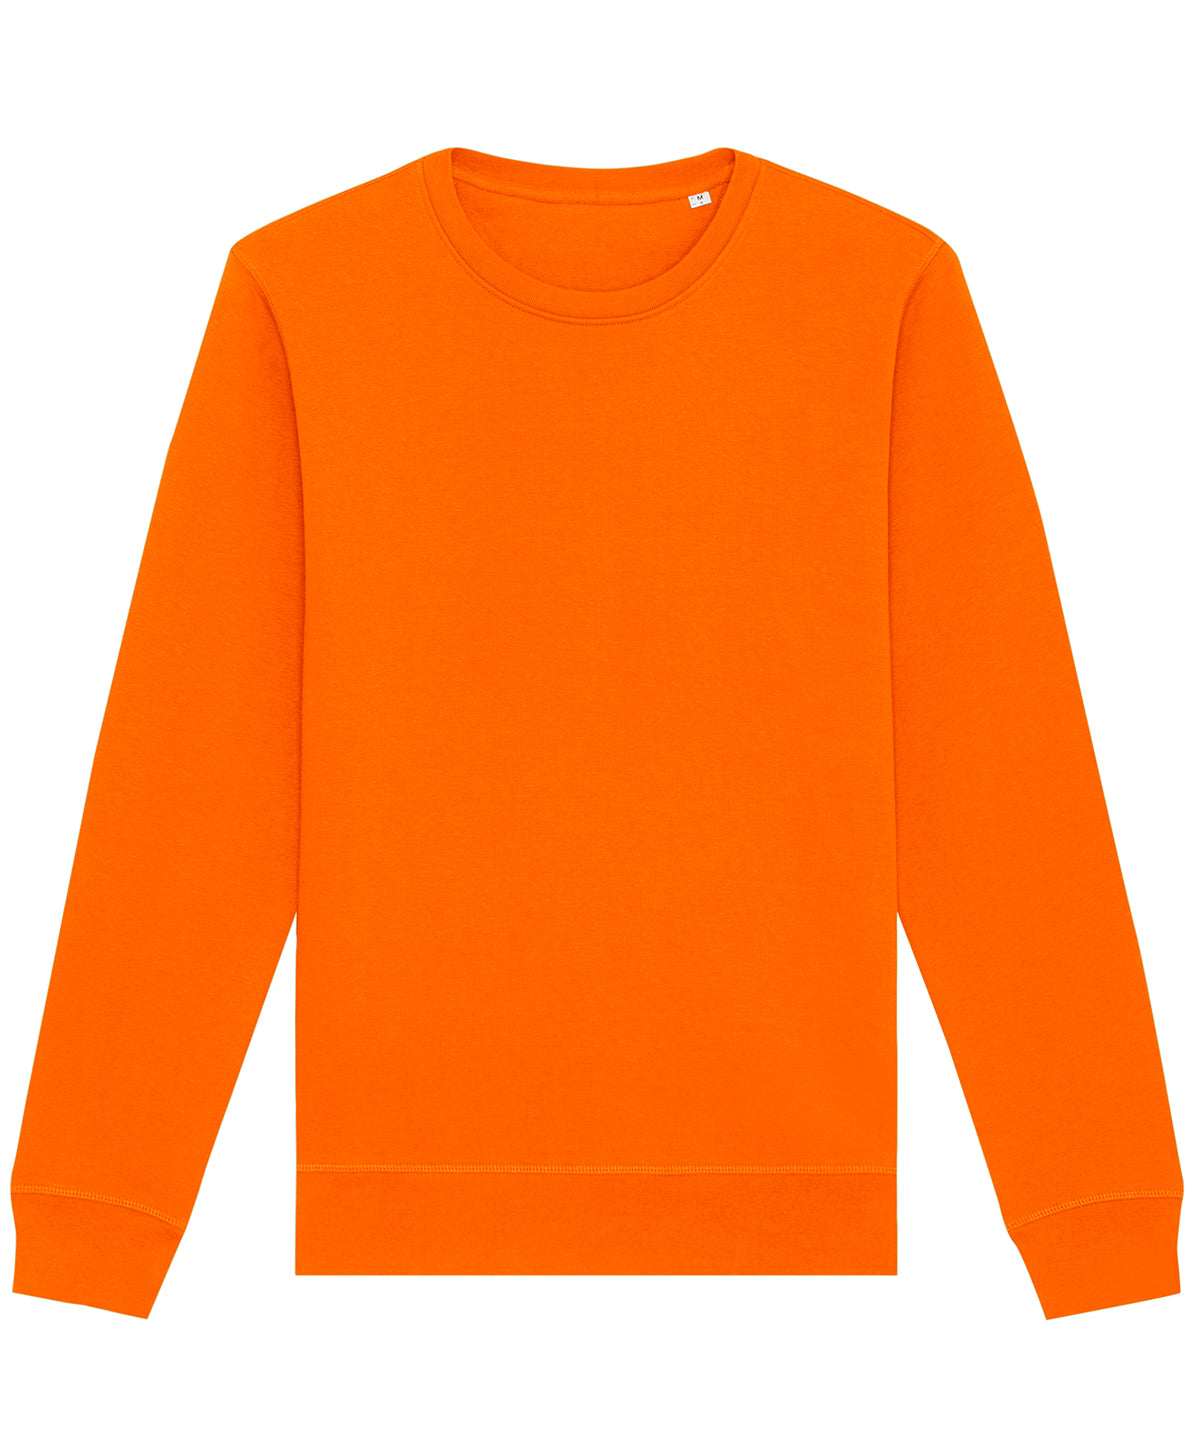 Stanley/Stella Roller Unisex Crew Neck Sweatshirt Bright Orange